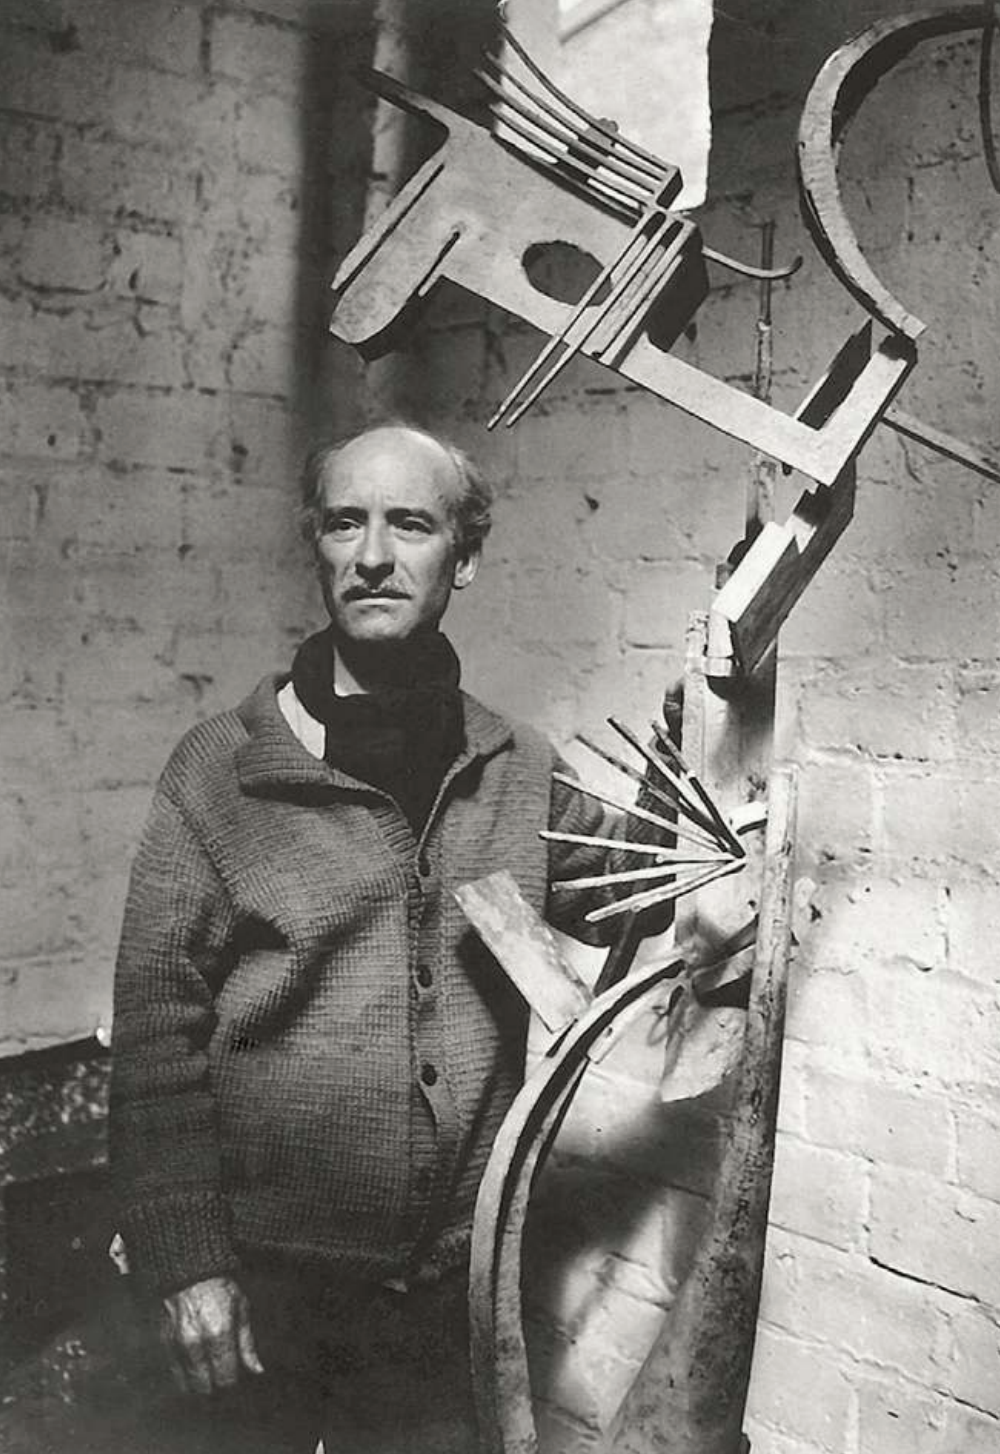 Julio González, Pablo Picasso y la desmaterialización de la escultura